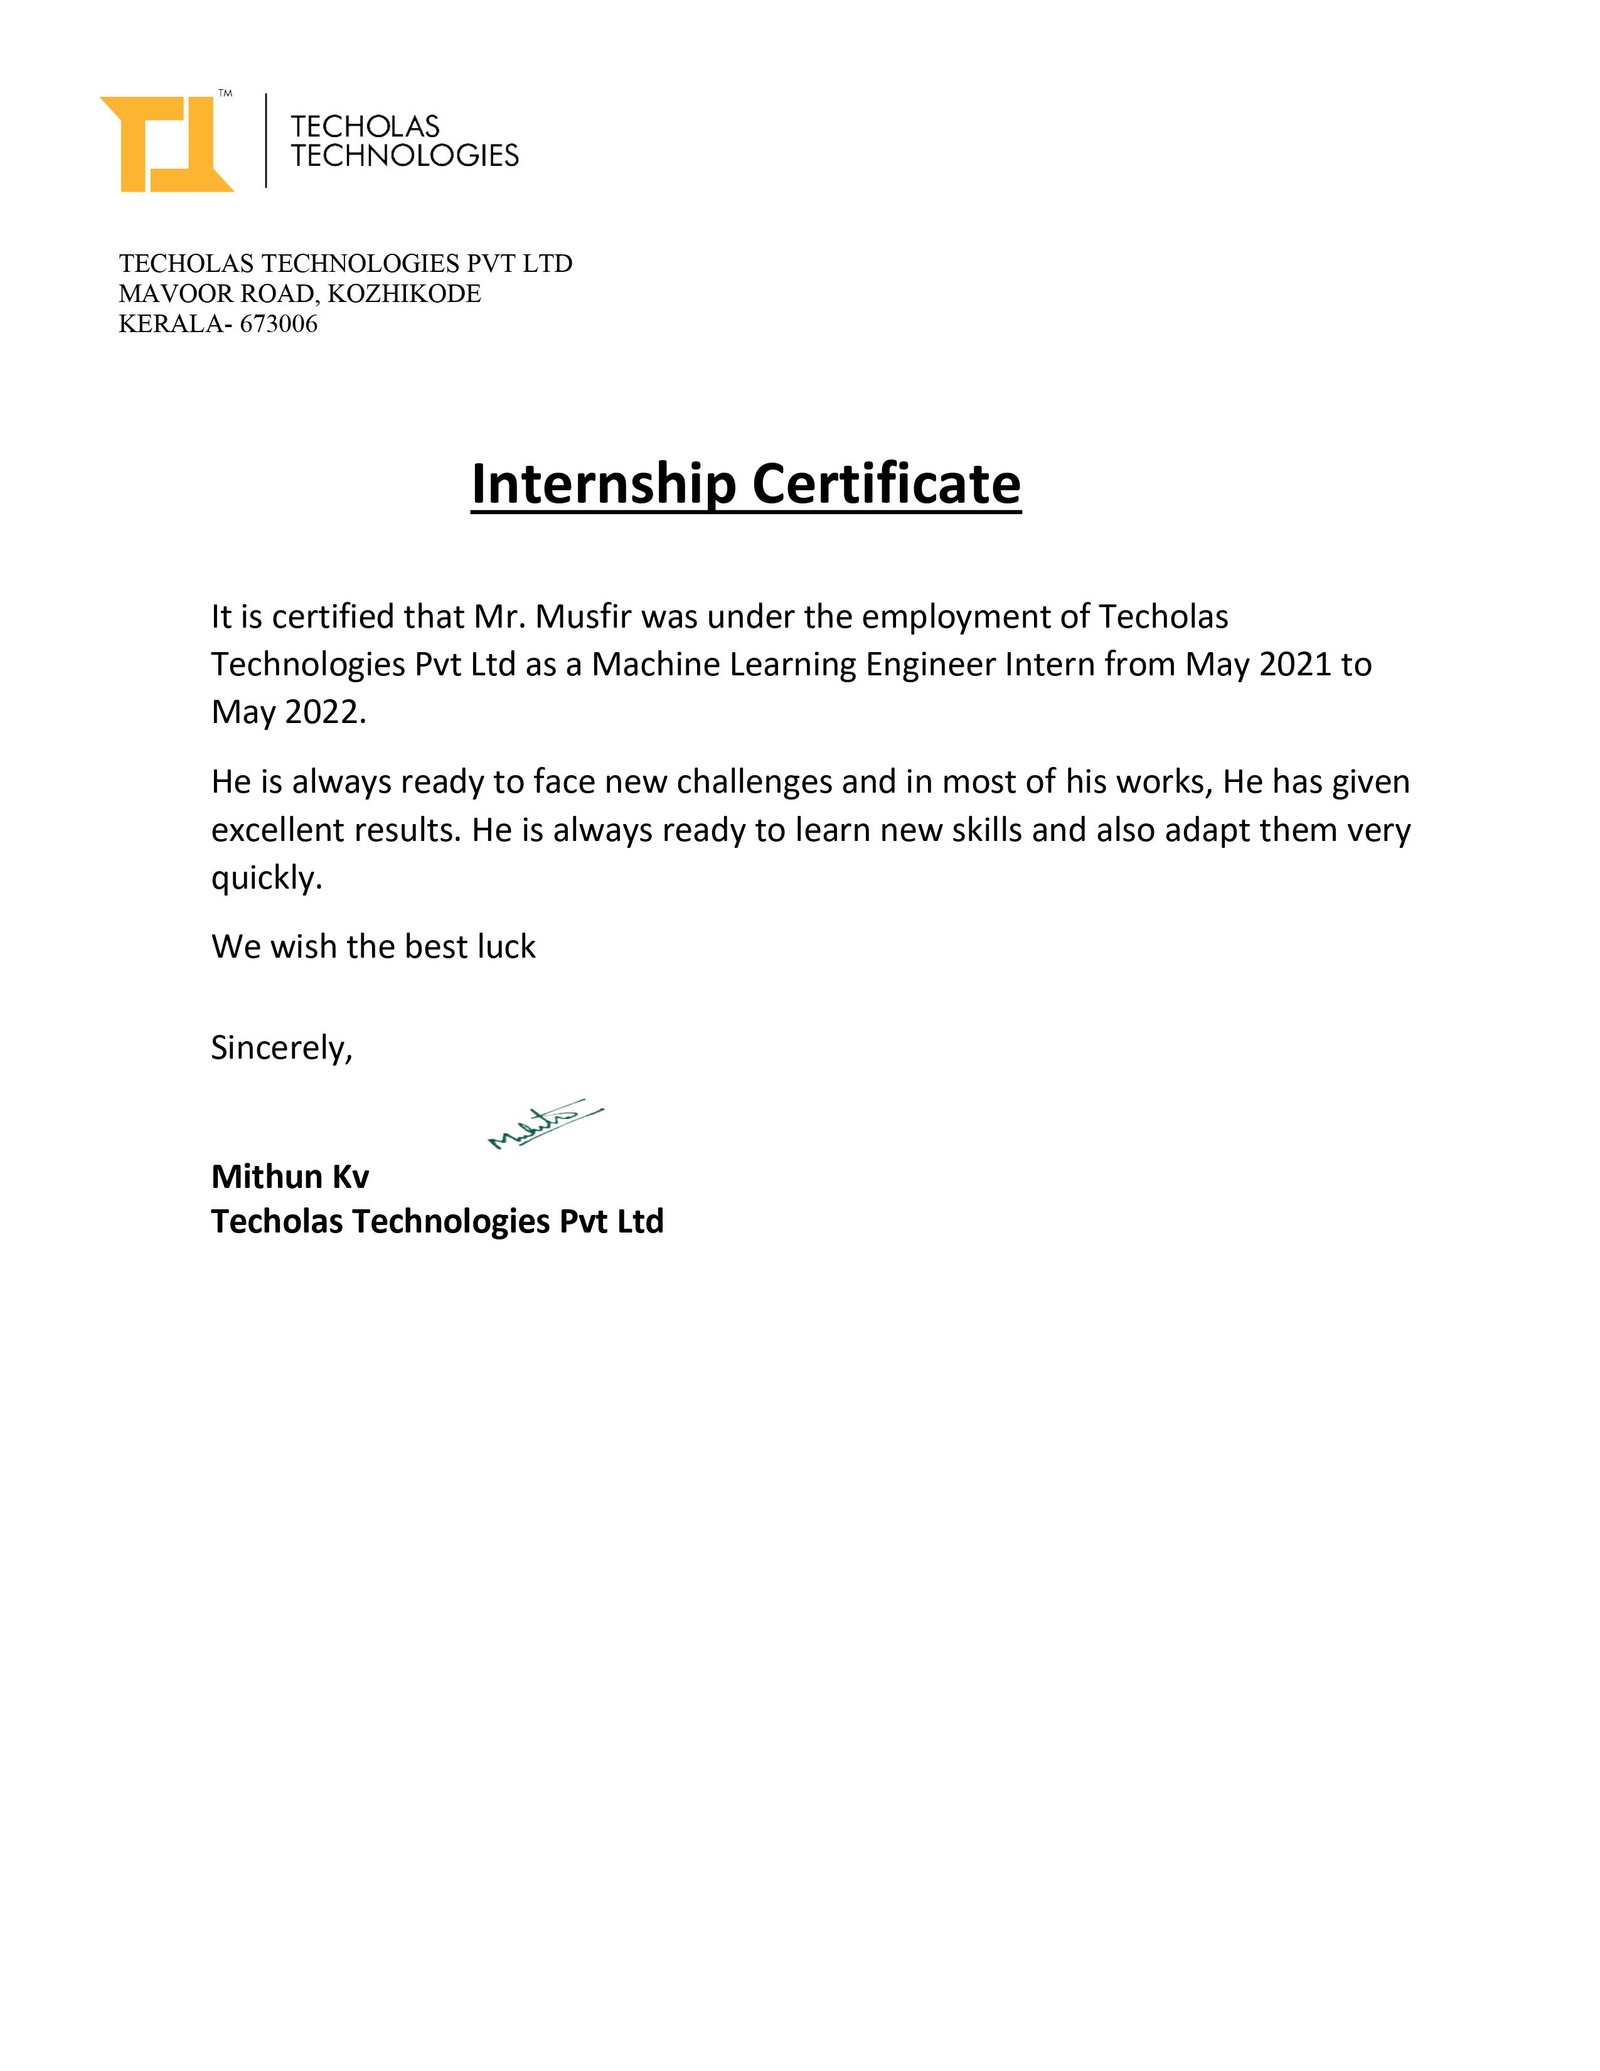 Flutter Internship Certificate